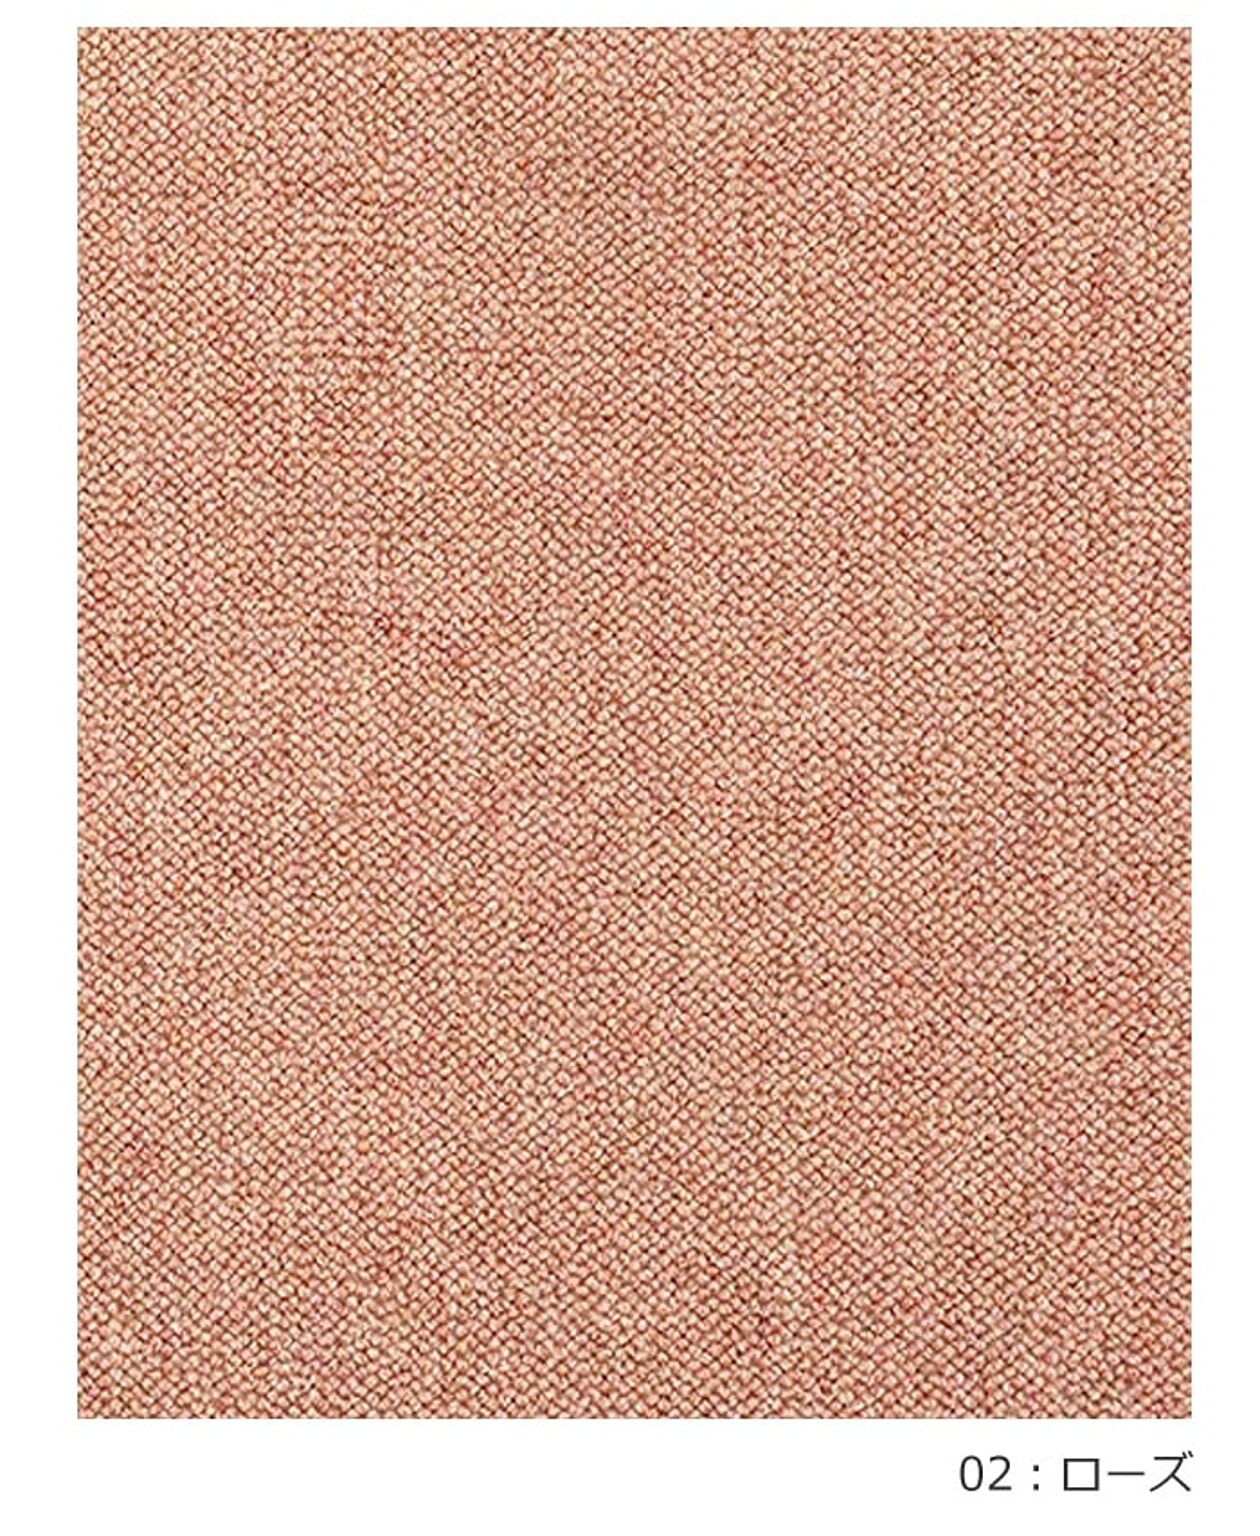 ラグ ラグマット 絨毯 日本製 防炎 防音 ウール100% カーペット prevell プレーベル リンクス 江戸間6畳 約261×352cm 無地 北欧 デザイン おしゃれな 引っ越し 新生活